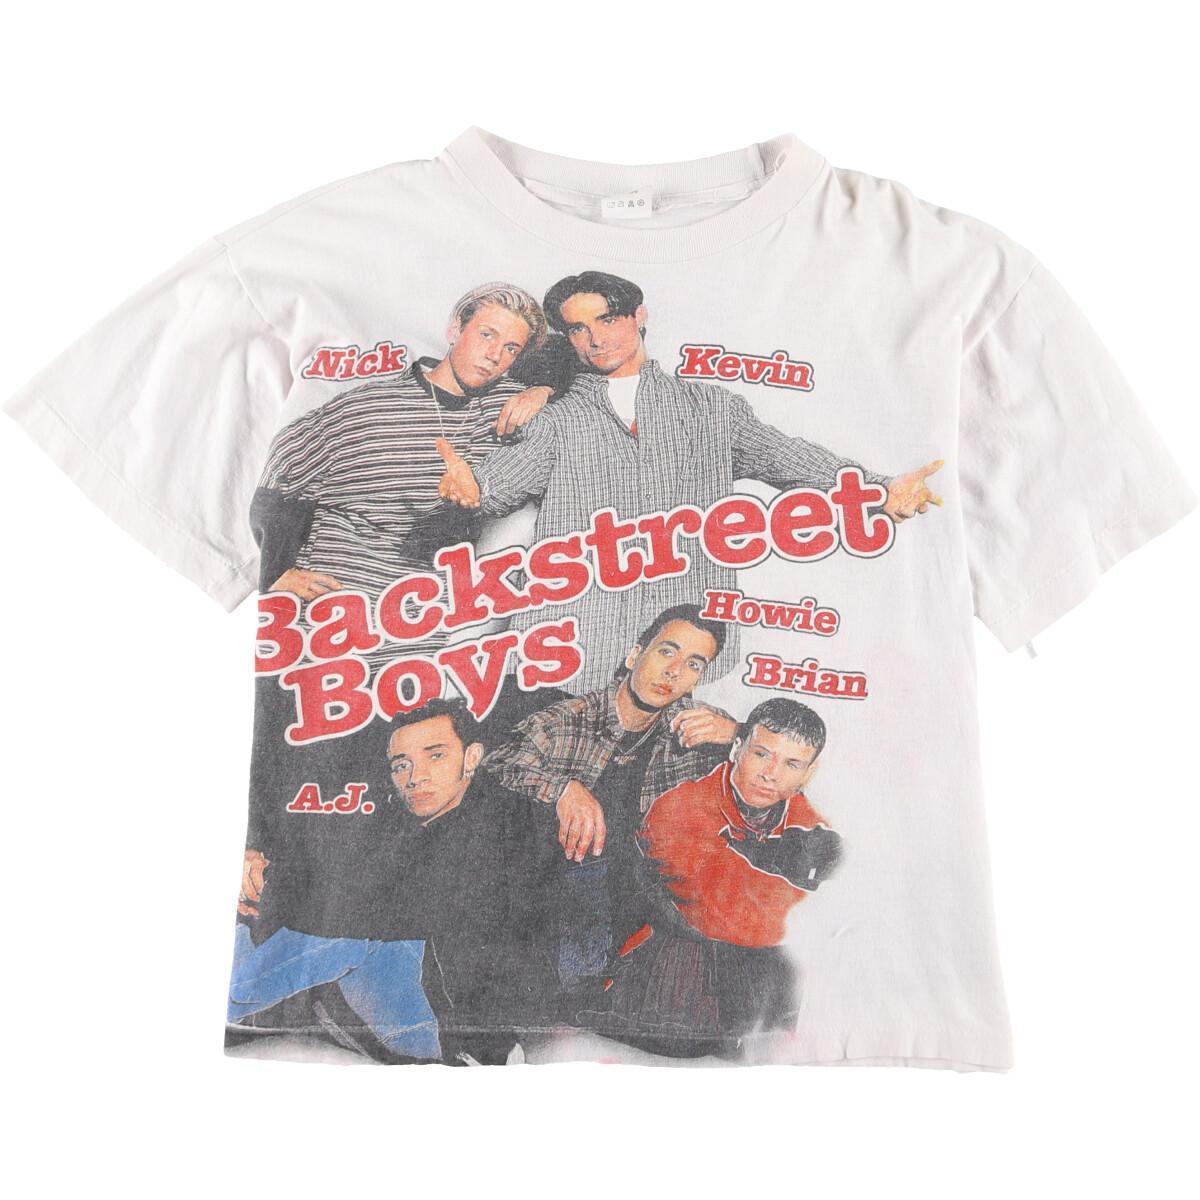 19960円海外 安い 限定特価即納可能 90s BACKSTREET BOYS ビンテージ バンド Tシャツ 古着 トップス PINK FLOYD  ピンクフロイド 古着 ビンテージ バンド Tシャツ 90s